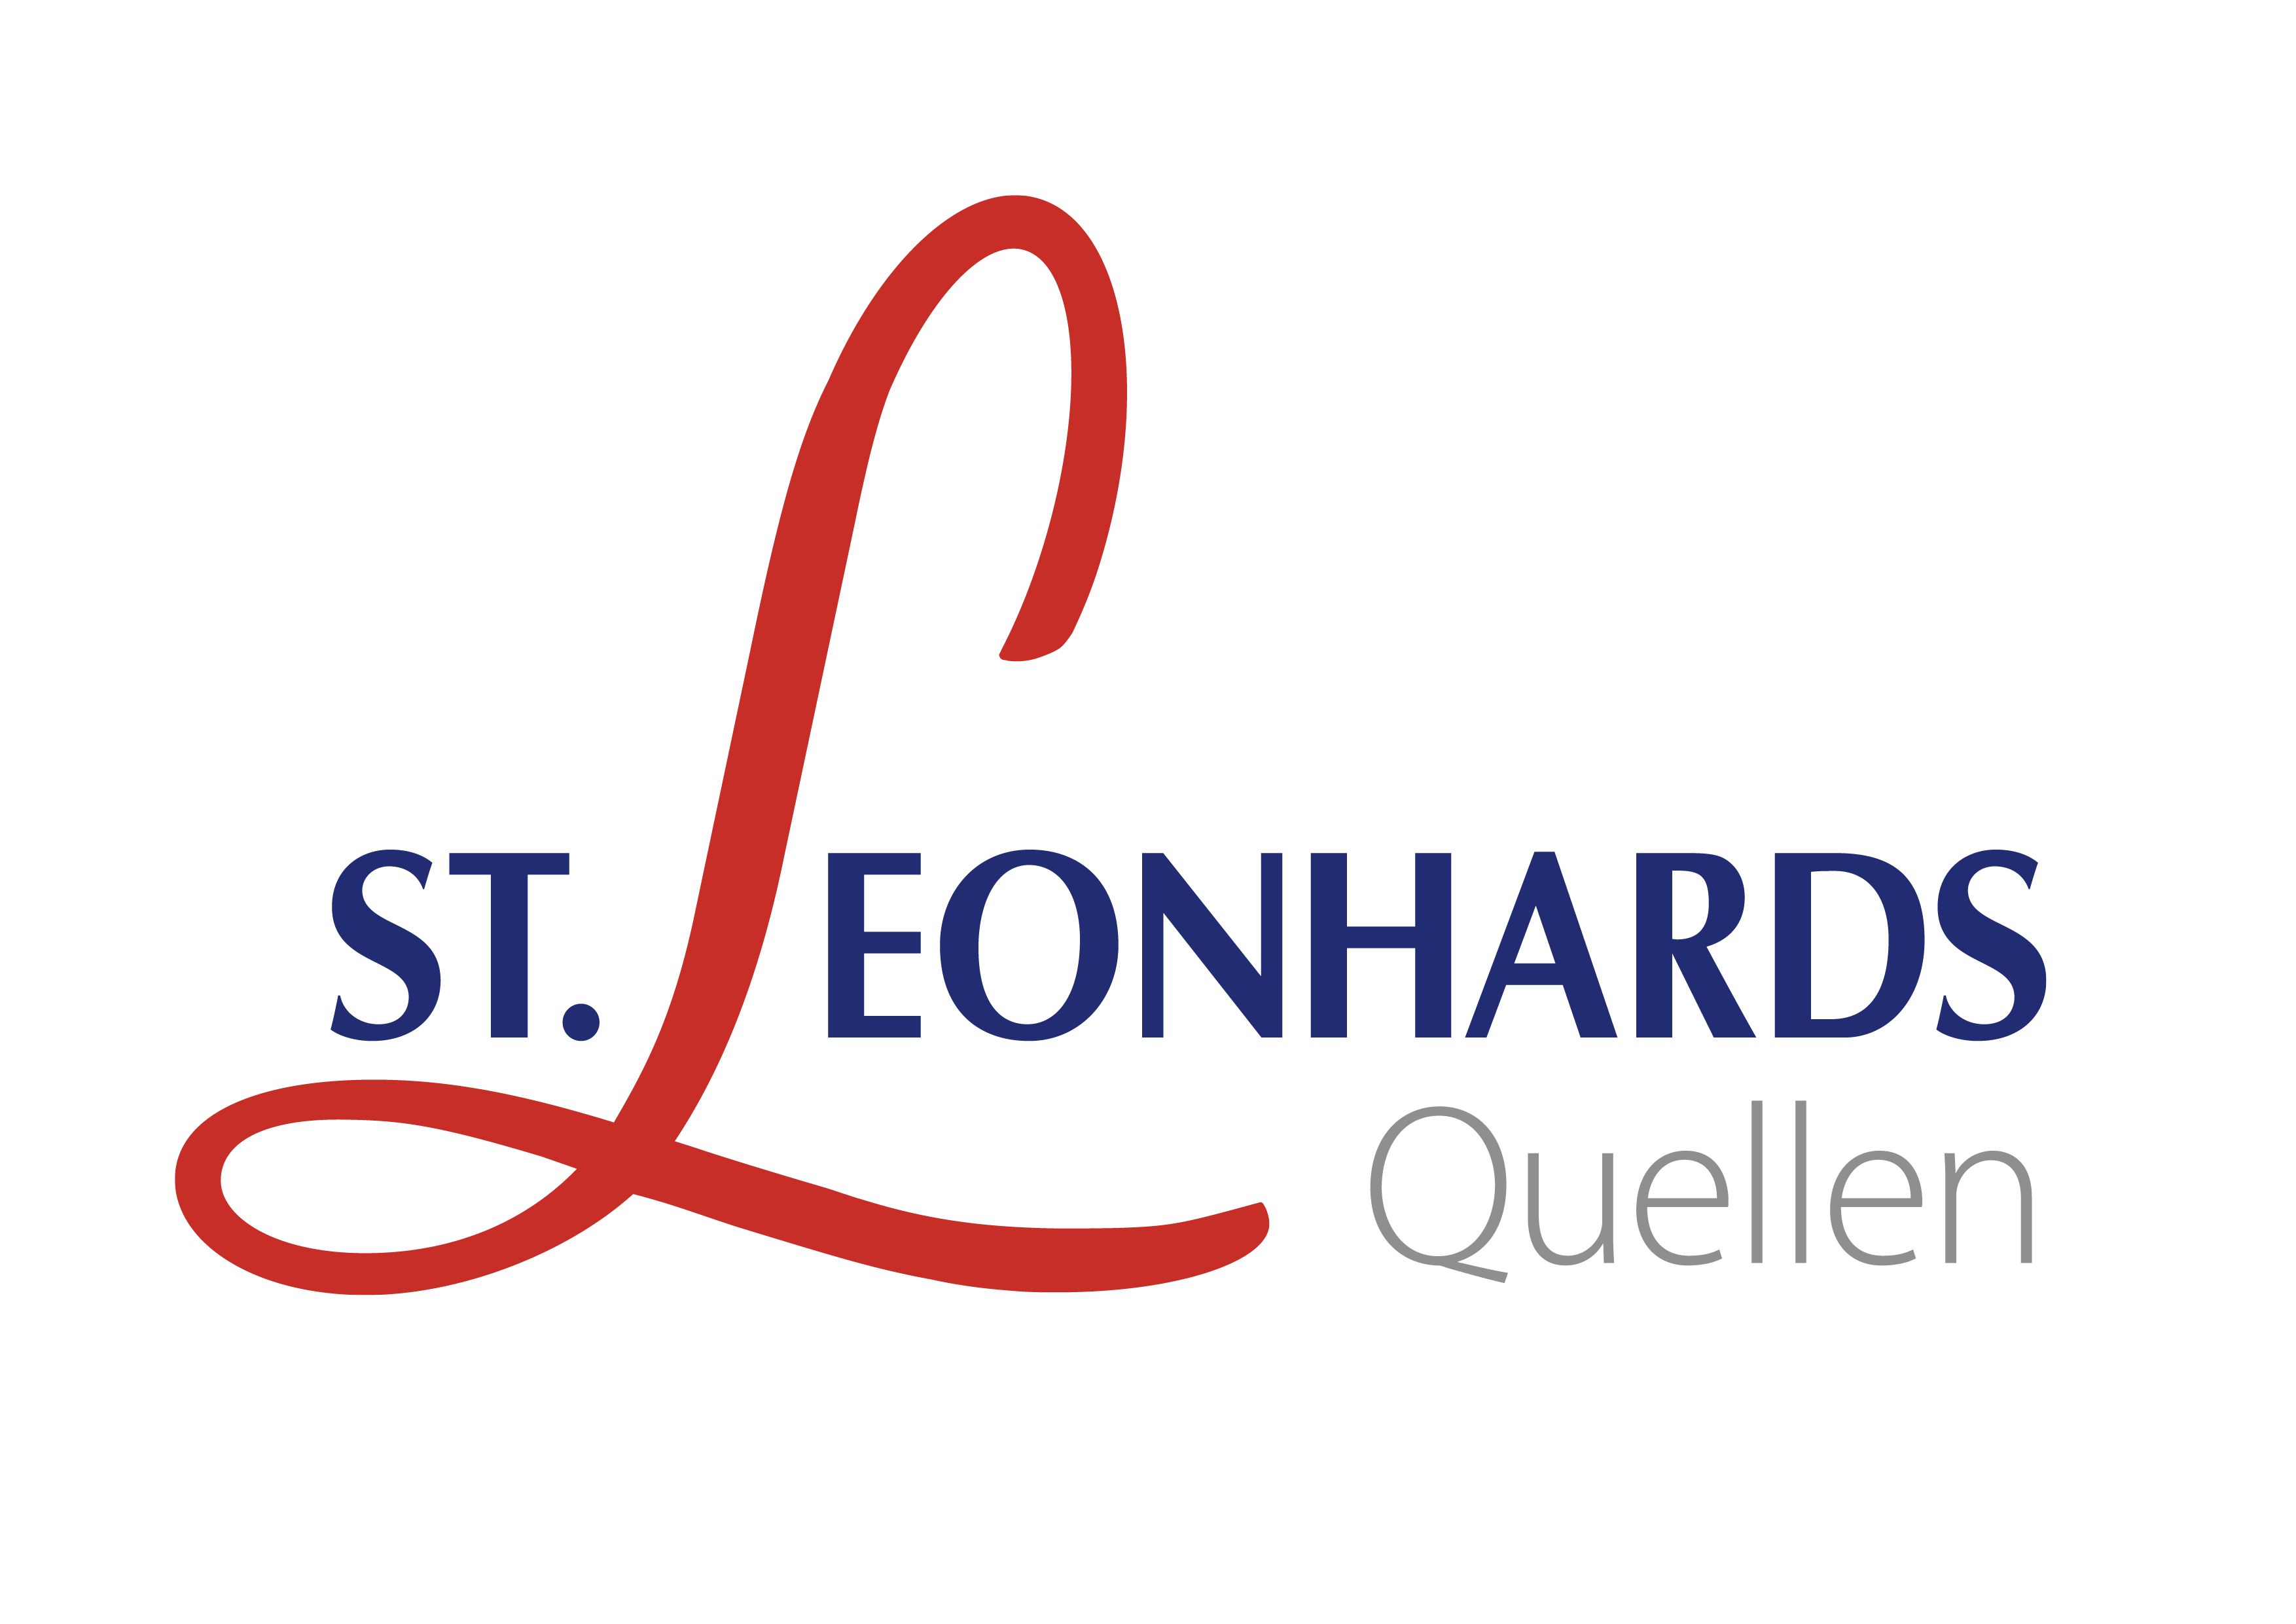  St. Leonhards Quellen – Logo